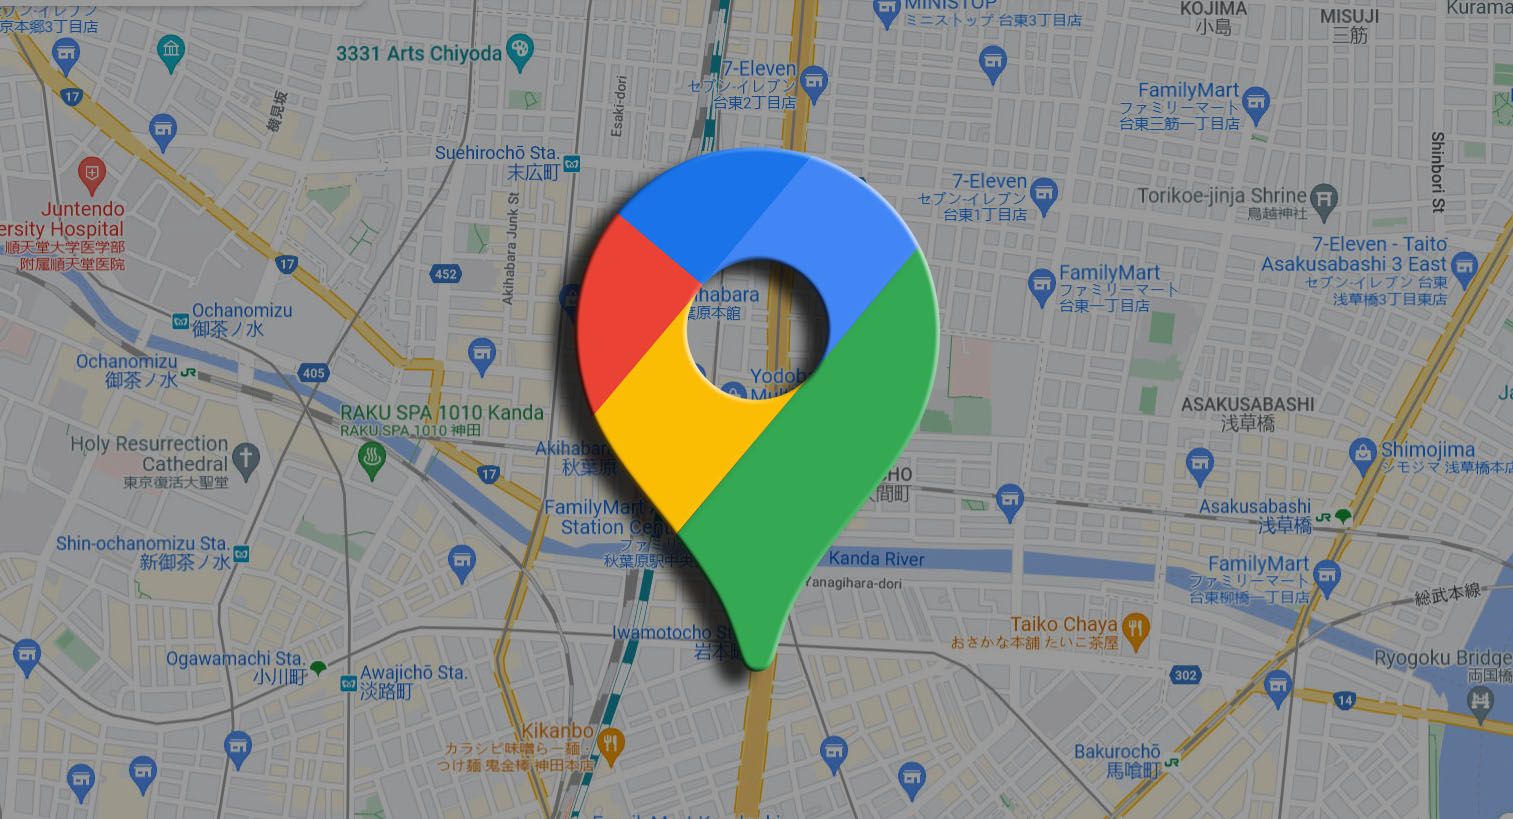 Jak smazat historii ve službě Google Maps?